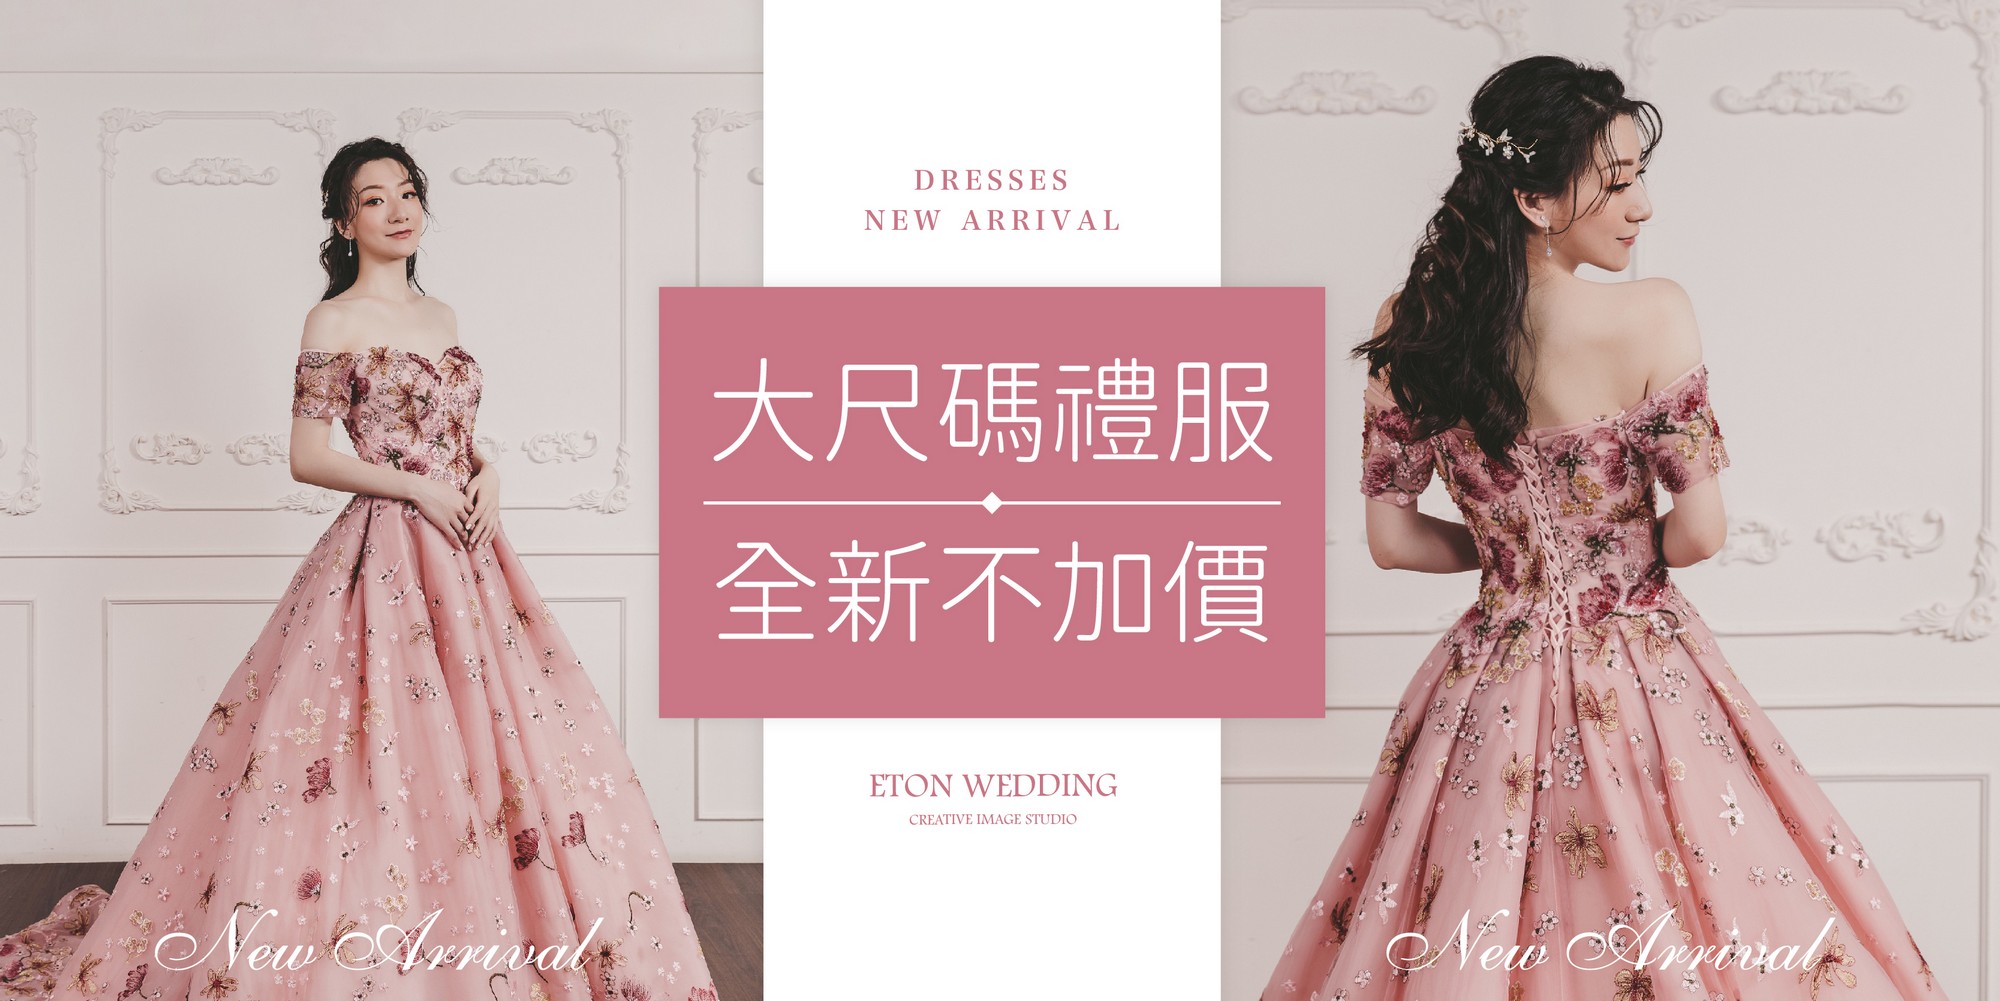 台北自助婚紗,台北婚紗店,台北婚紗工作室,台北婚紗攝影